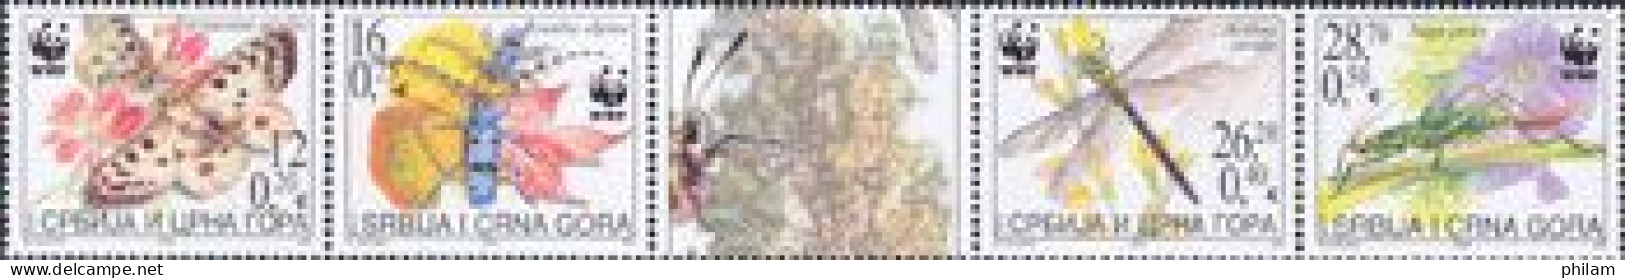 SERBIE & MONTENEGRO 2004 - W.W.F. - Insectes Protégés - 4 V. - Unused Stamps